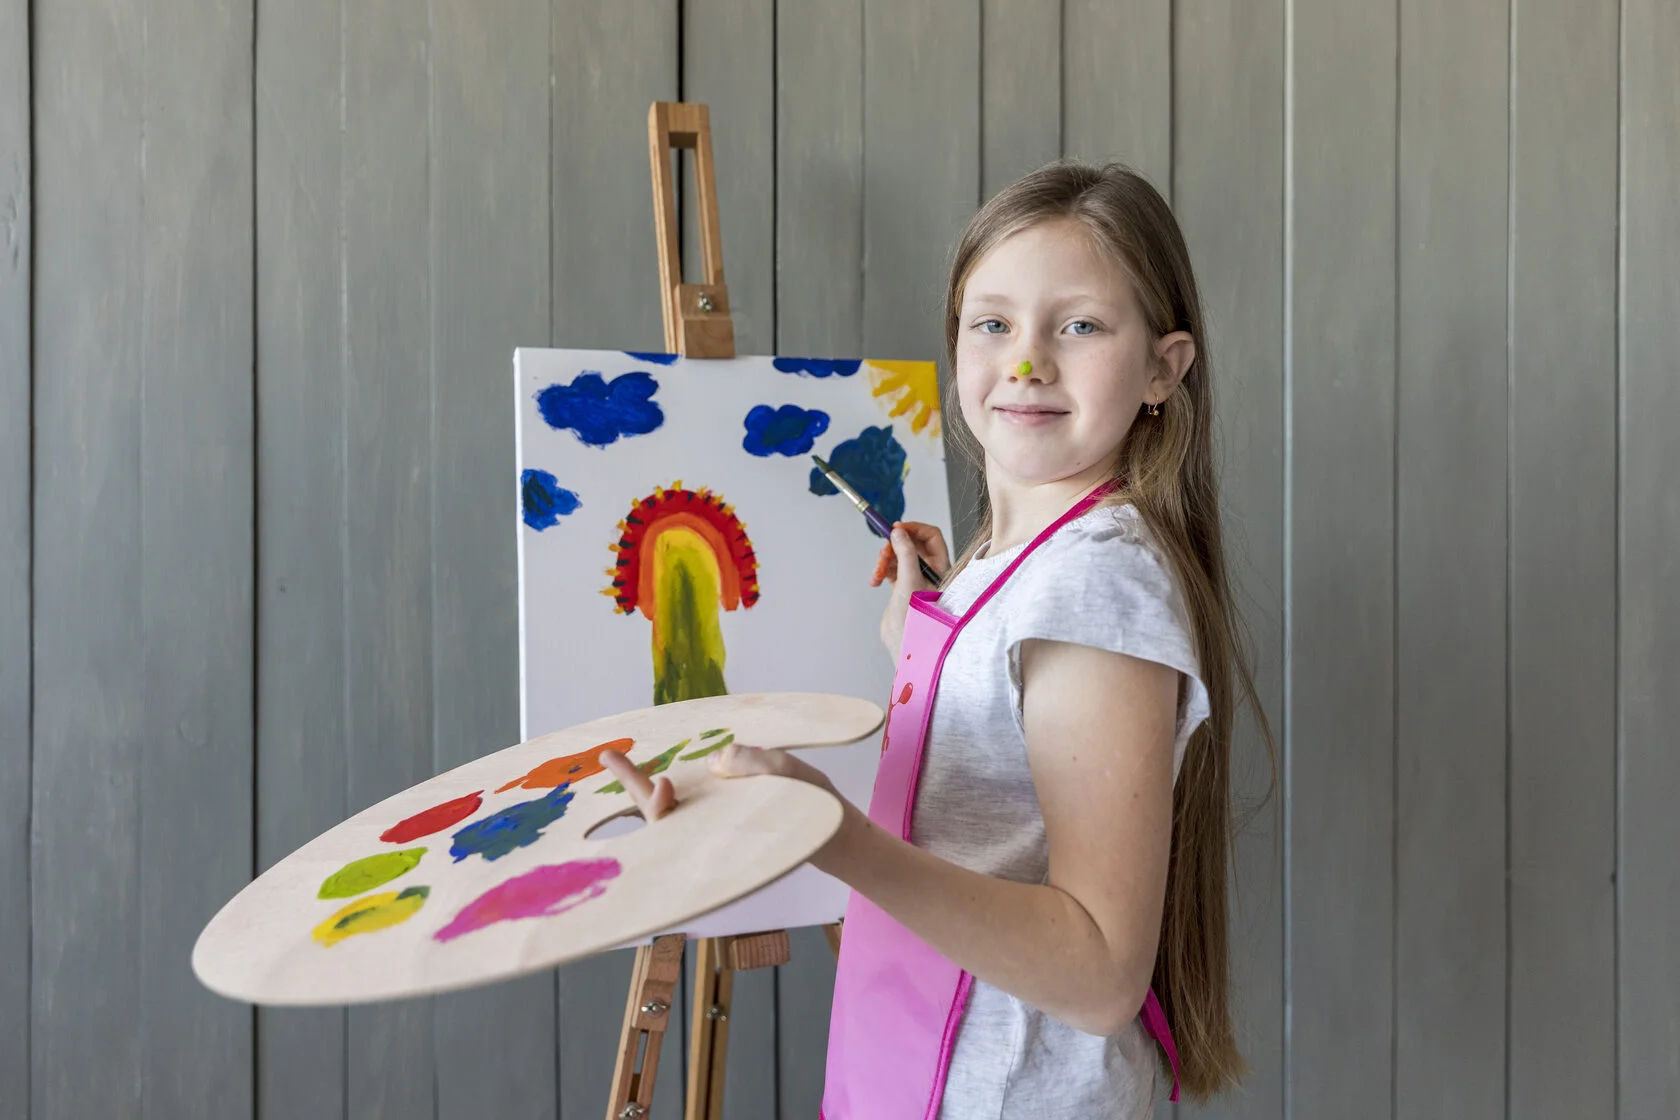 Кружок рисования "Мир на палитре" приглашает юных художников от 5 до 14 лет, фото